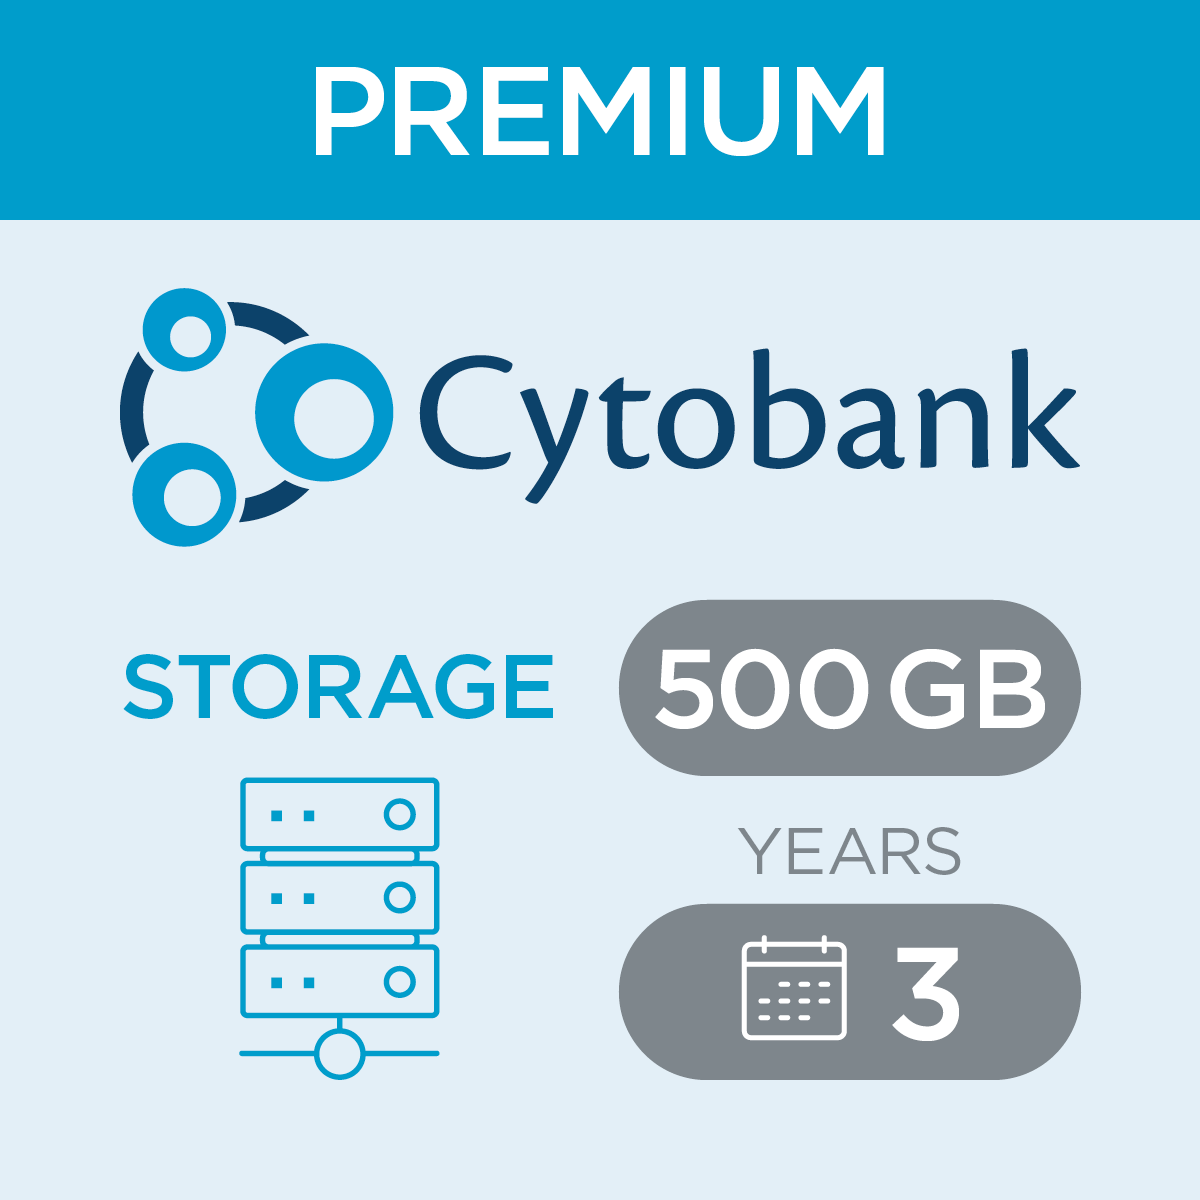 c47421, Cytobank Storage per 500 Gb for Premium, 3-year